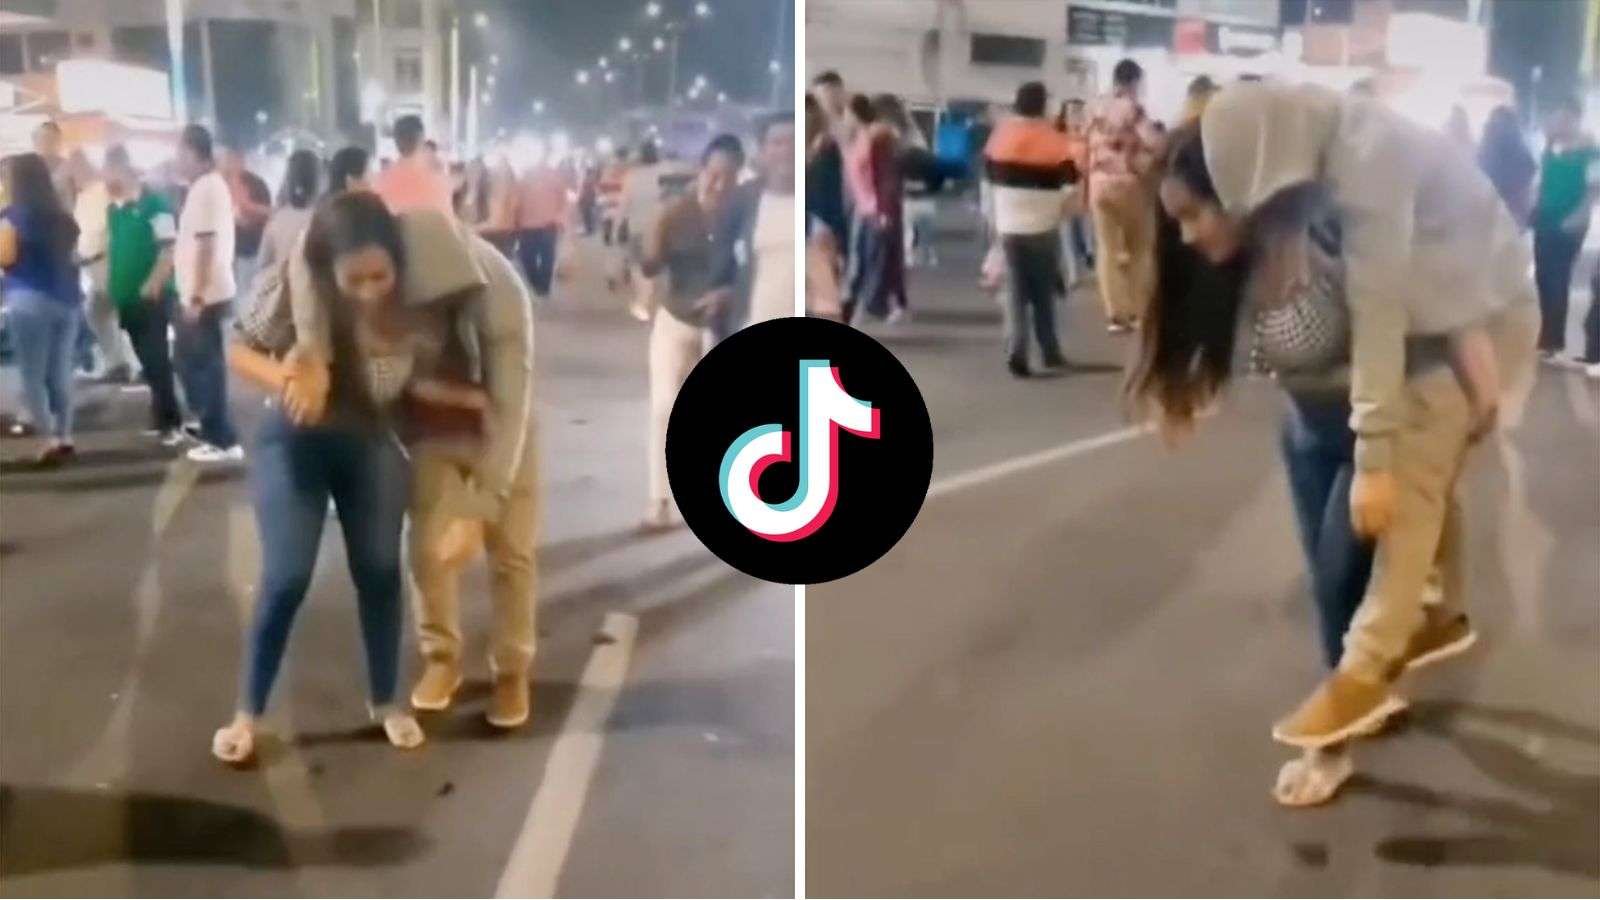 Girlfriend carries drunk boyfriend home on her back in viral TikTok